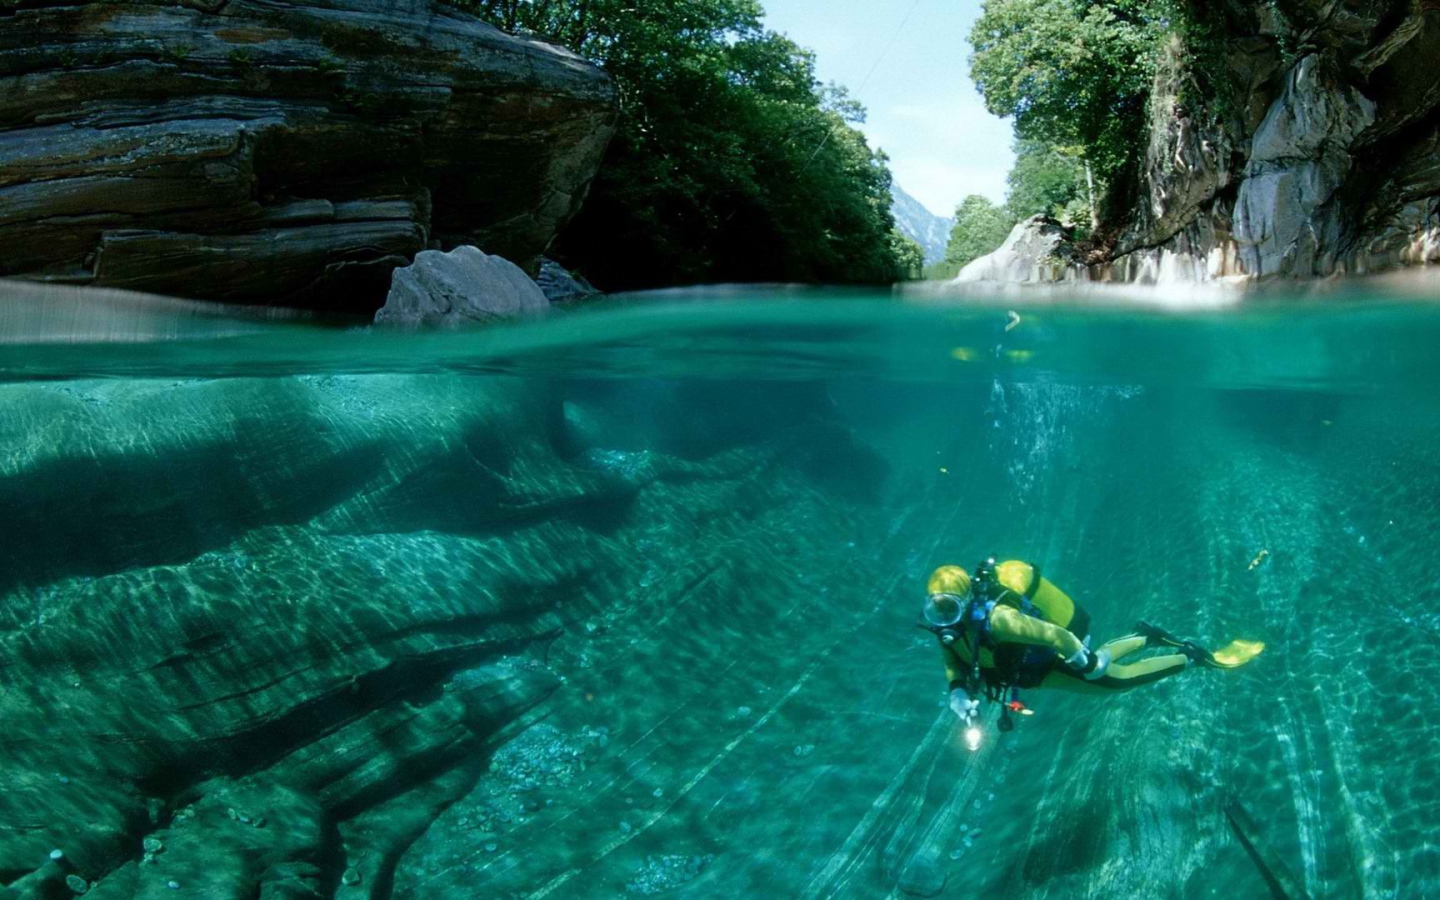 Underwater swimmer in Switzerland